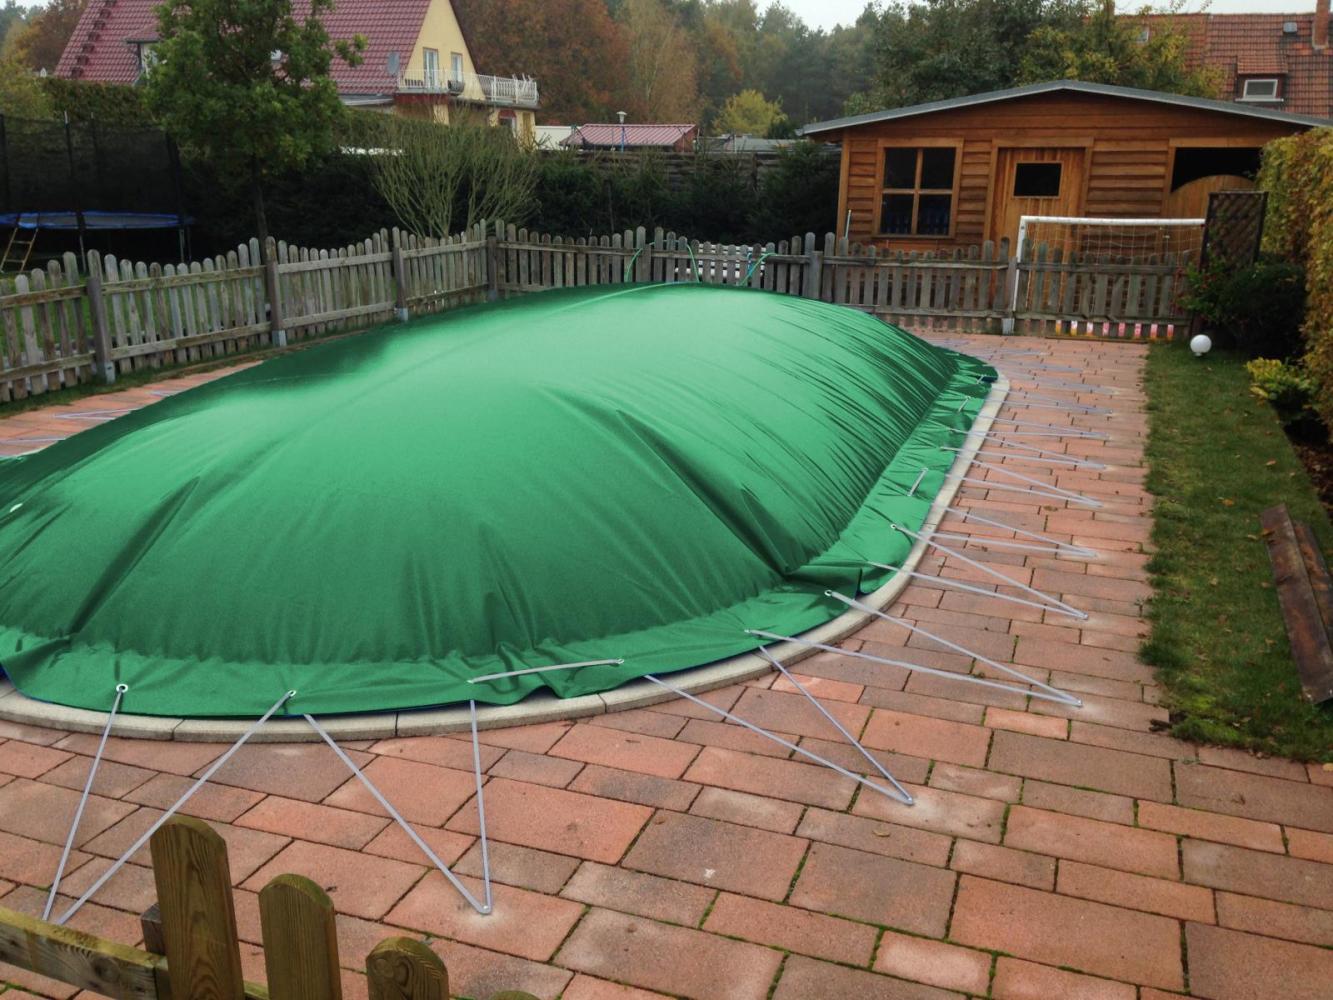 aufblasbare Winterplane für ovale Pools 6,20 x 3,50 cm Grün Bild 1